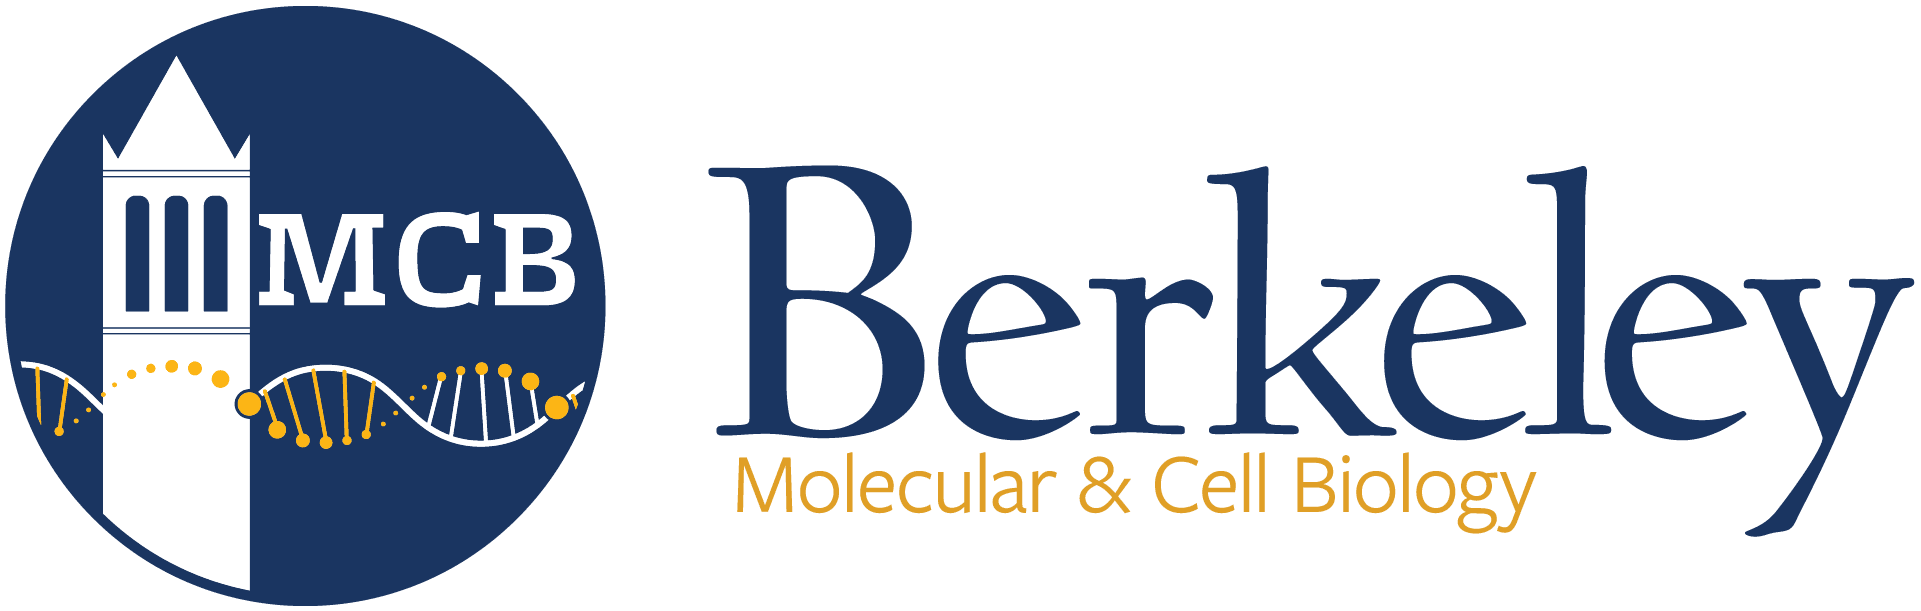 Berkeley Molecular & Cell Biology